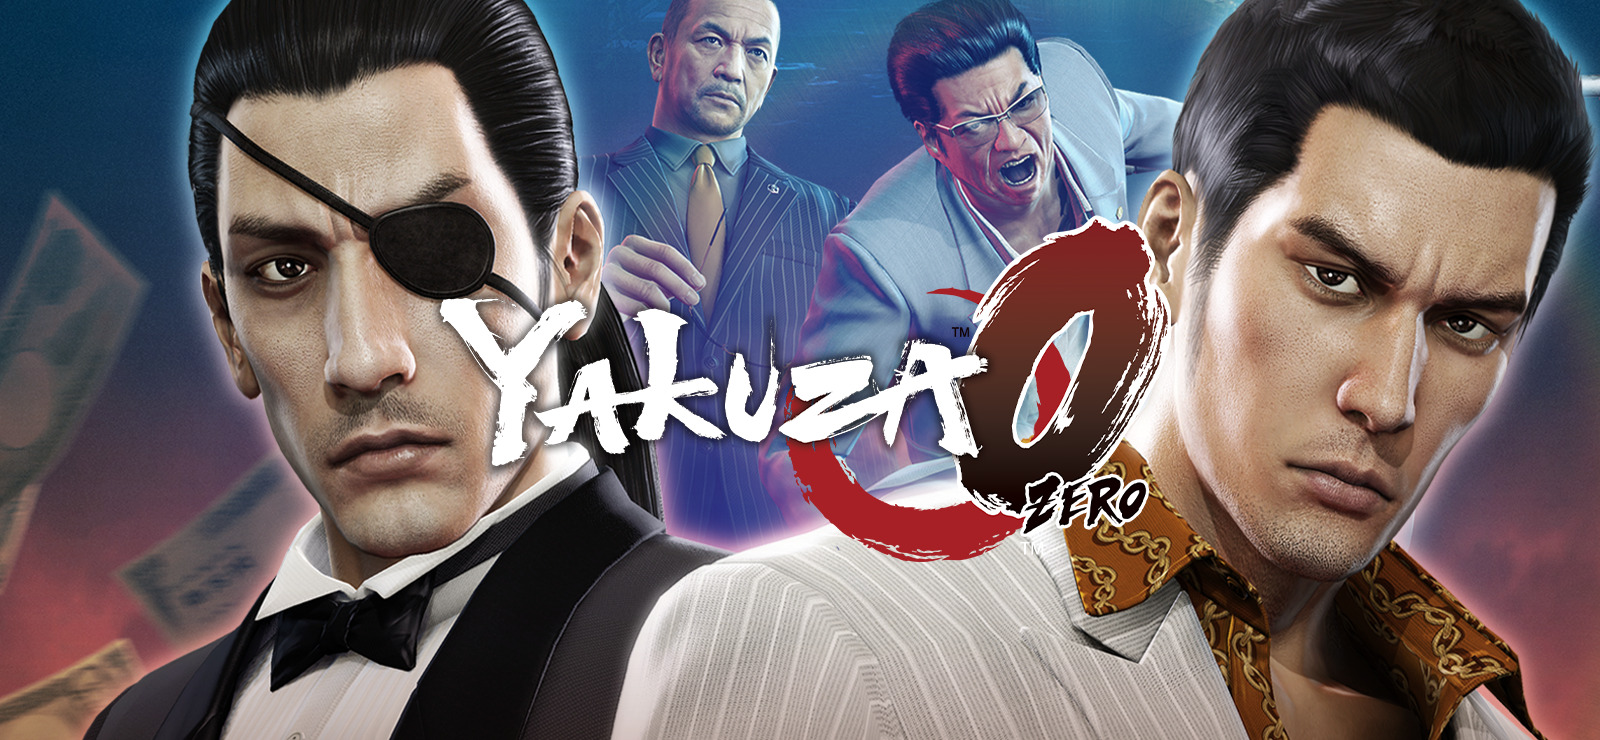 Yakuza 0 (PS4) - JGGH GamesJGGH Games